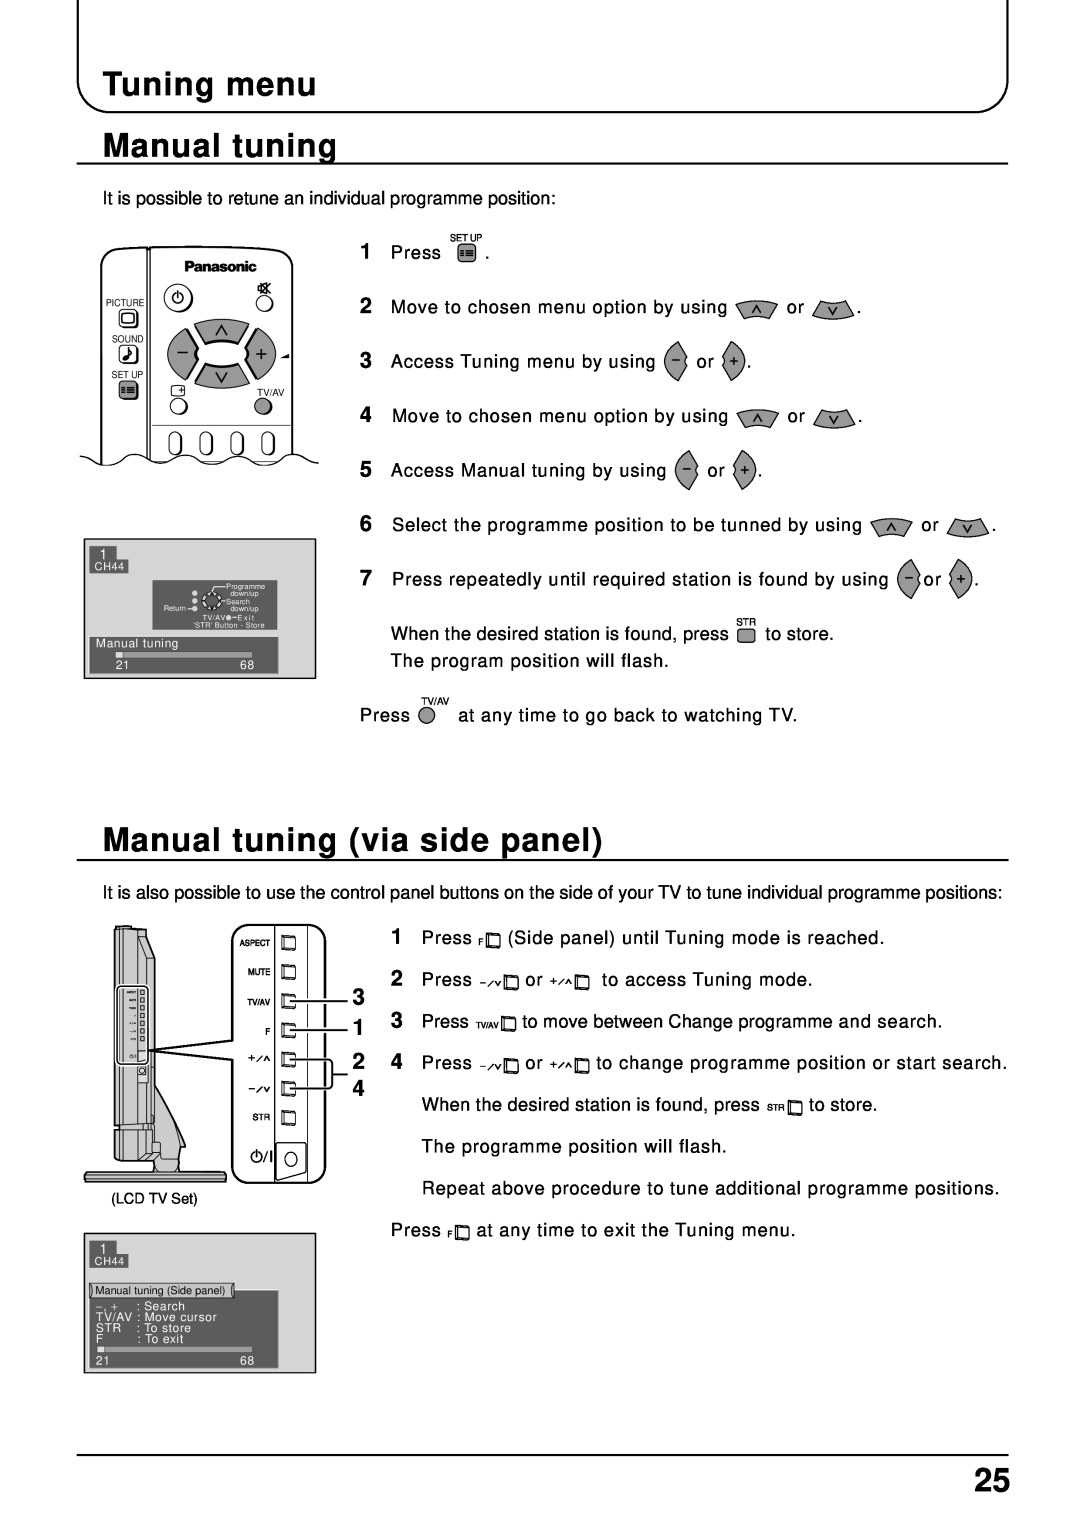 Panasonic TX-22LT2 manual Tuning menu Manual tuning, Manual tuning via side panel, Manual tuning 2168 